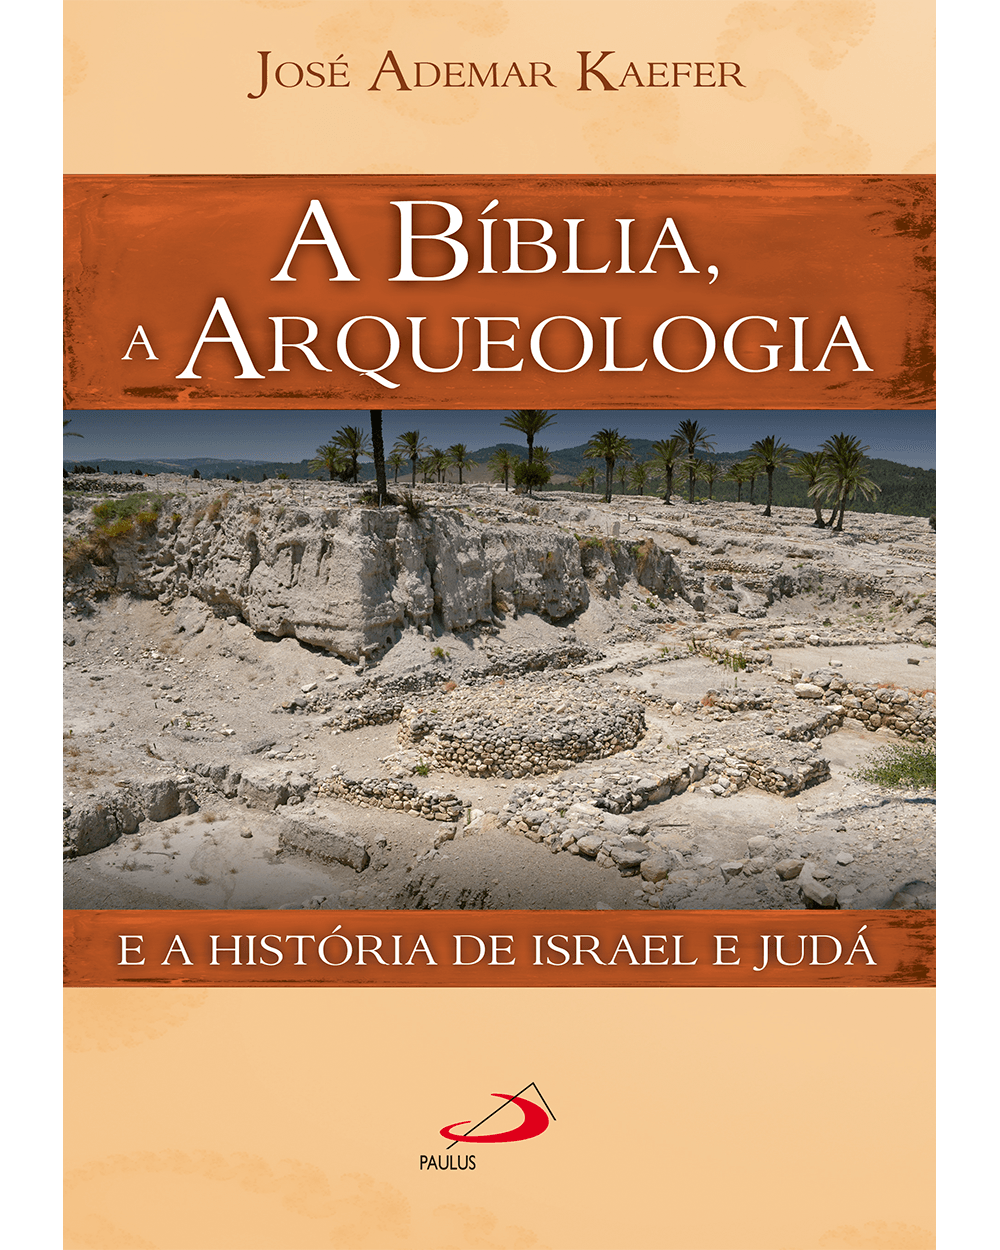 A Bíblia, a arqueologia e a história de Israel e Judá